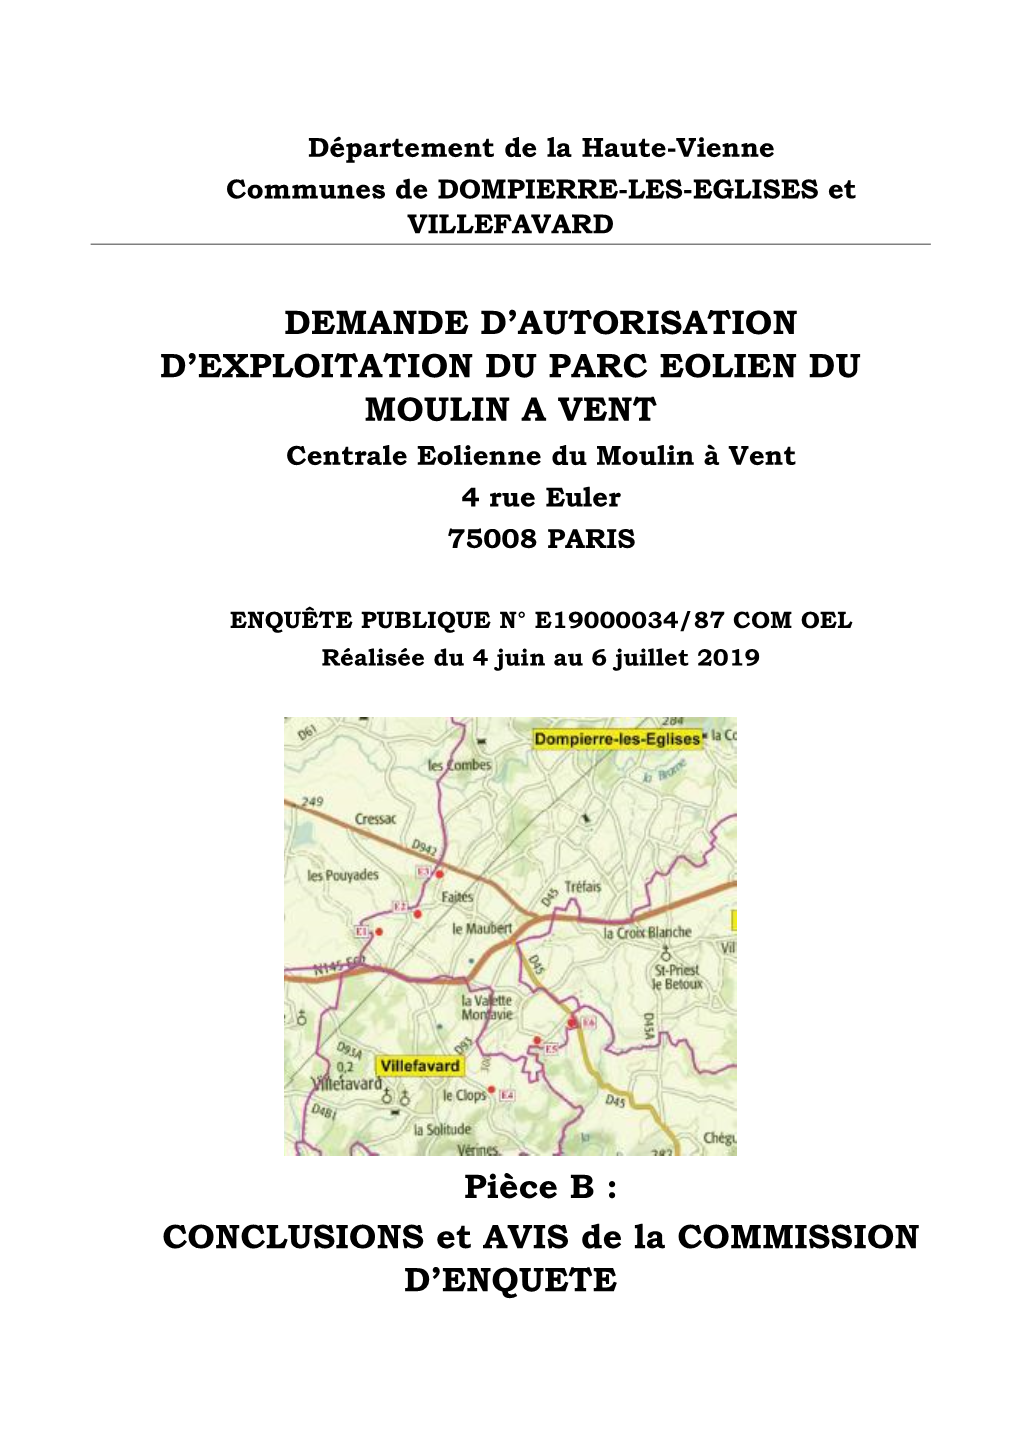 Demande D'autorisation D'exploitation Du Parc Eolien Du Moulin a Vent